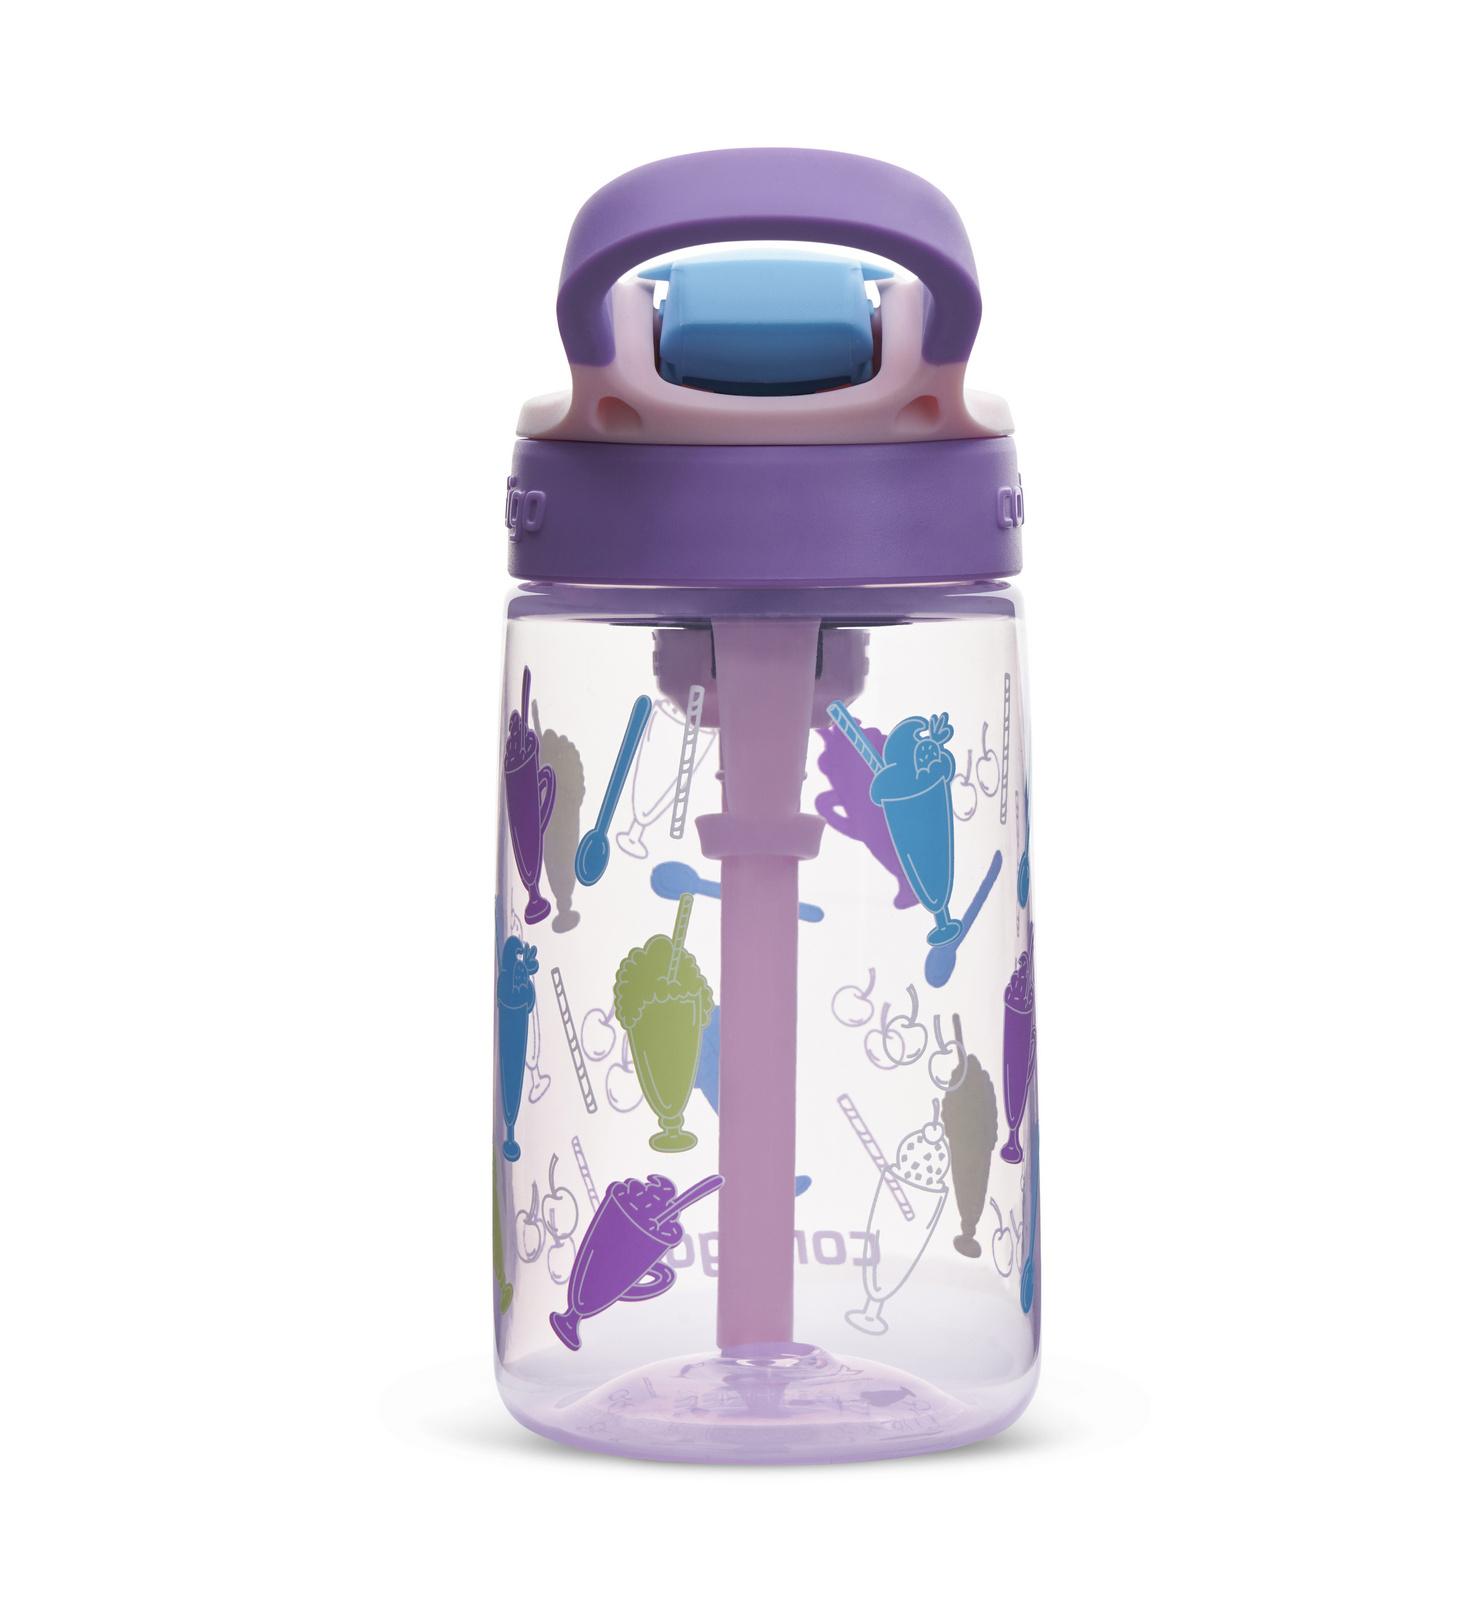 https://redbird.pl/eng_pl_Water-bottle-bottle-for-children-Contigo-Easy-Clean-420ml-Strawberry-Shakes-66903_4.jpg